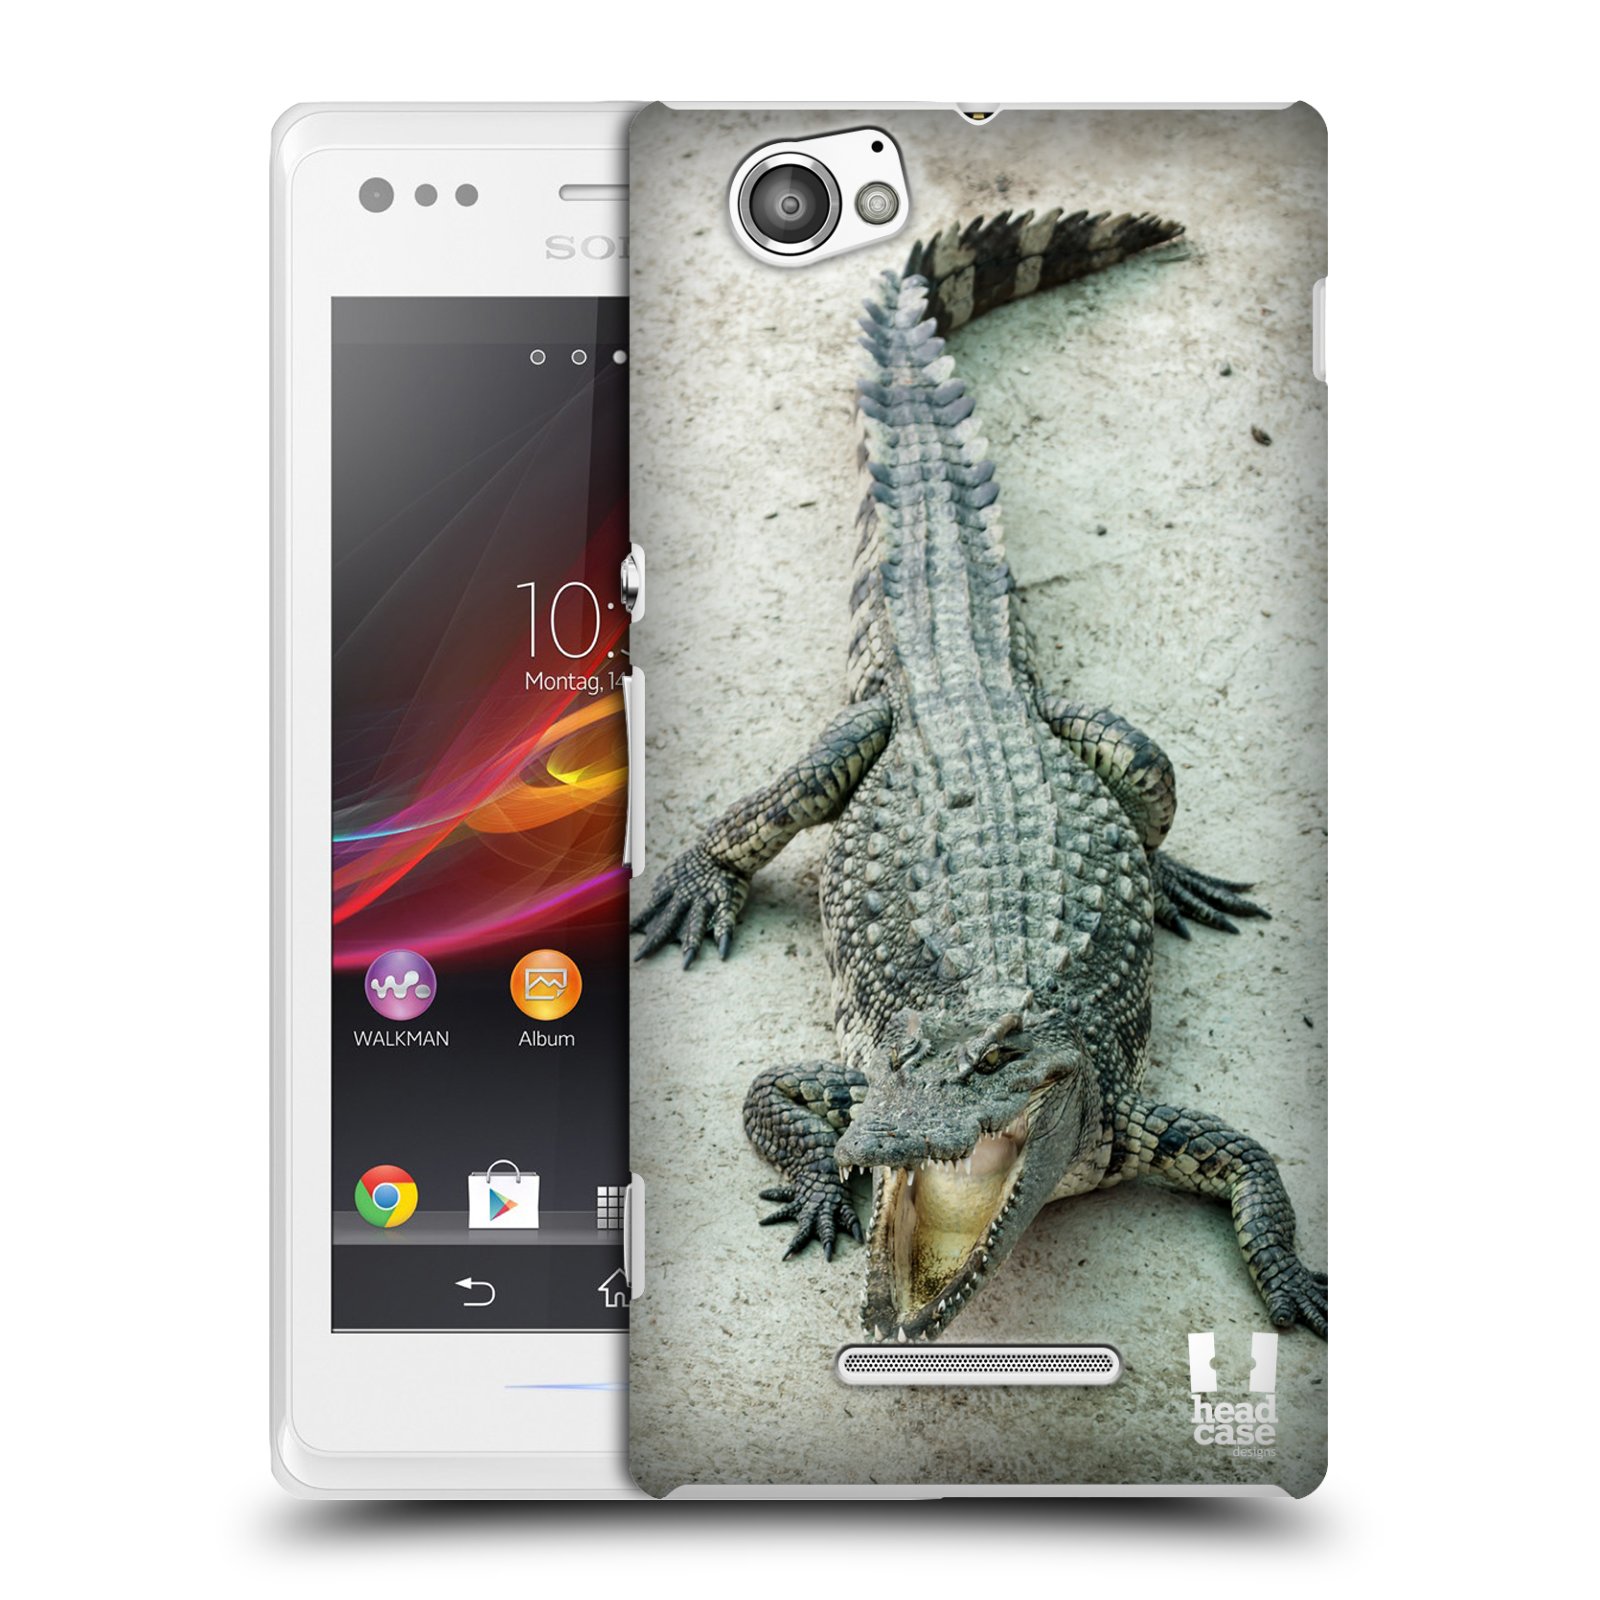 HEAD CASE plastový obal na mobil Sony Xperia M vzor Divočina, Divoký život a zvířata foto KROKODÝL, KAJMAN